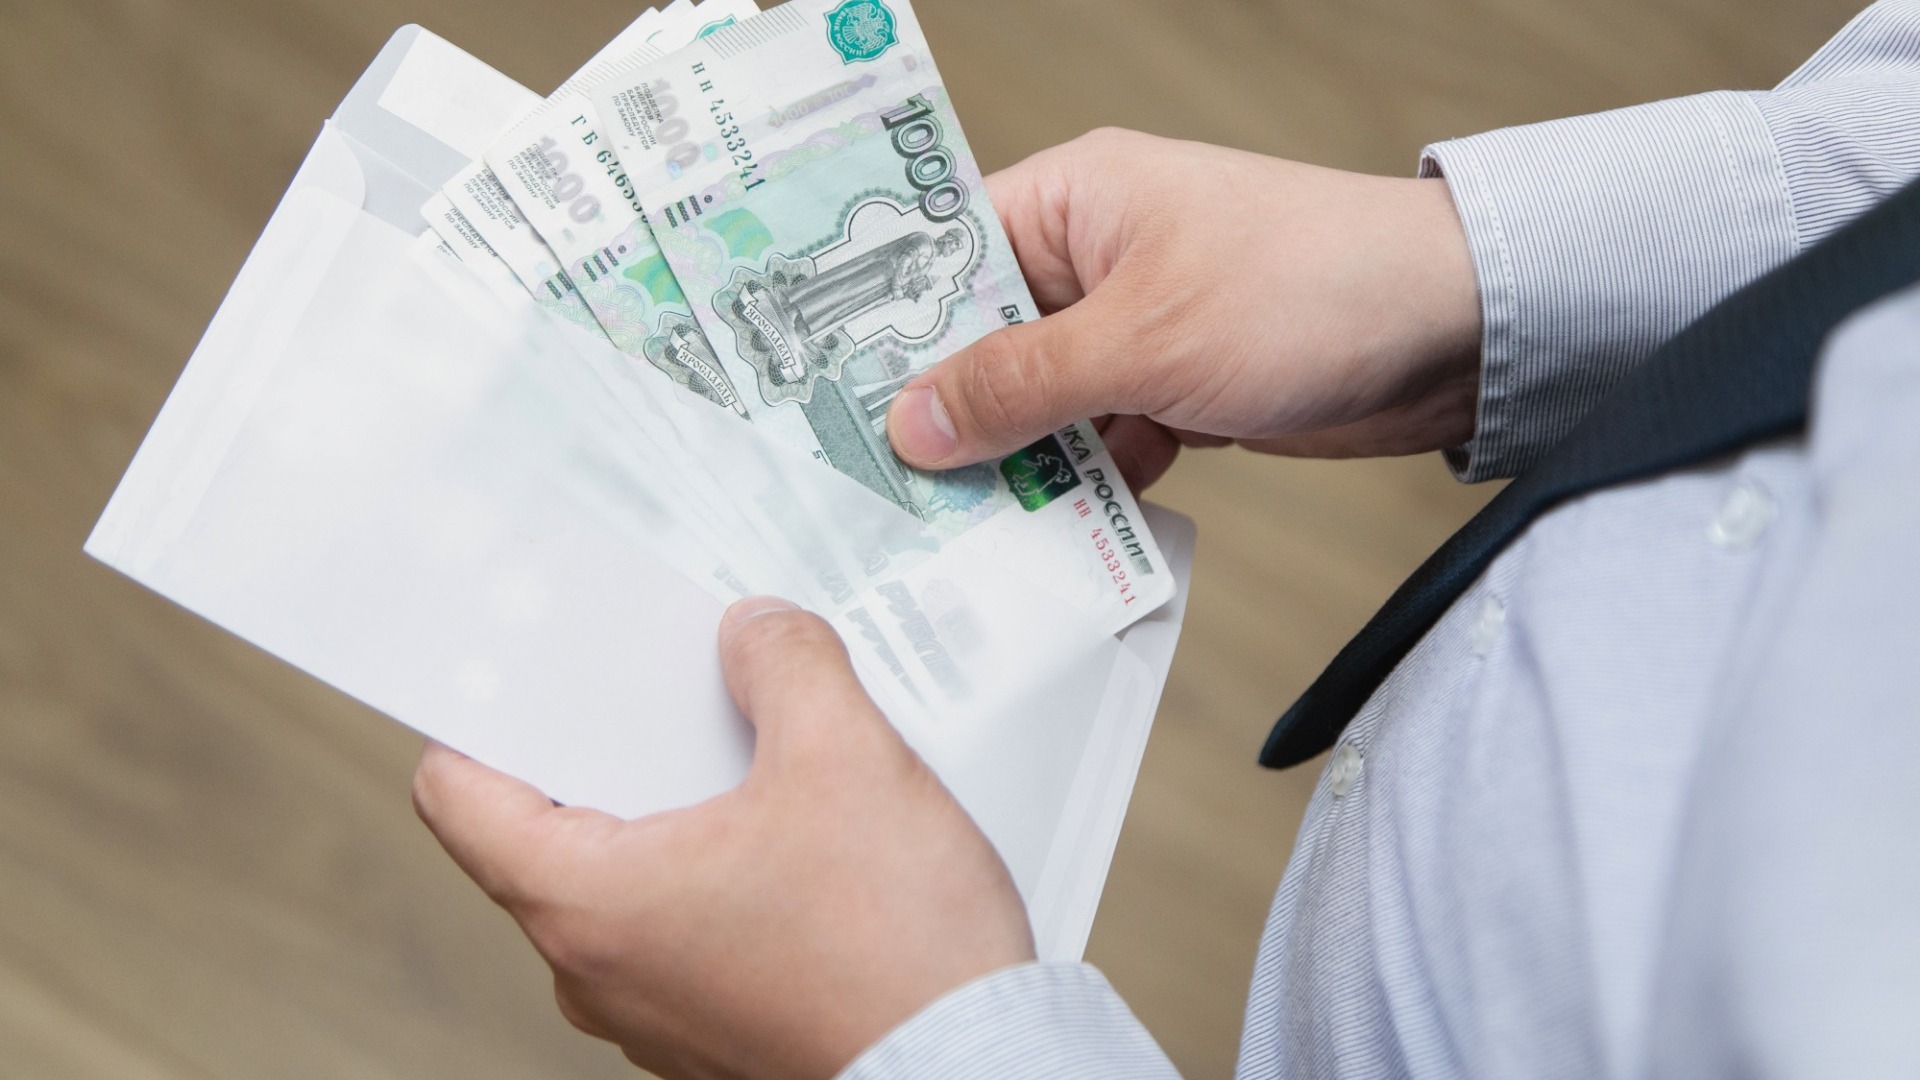 Нижегородский сотрудник МЧС заплатит штраф за присвоение 931 тысячи рублей